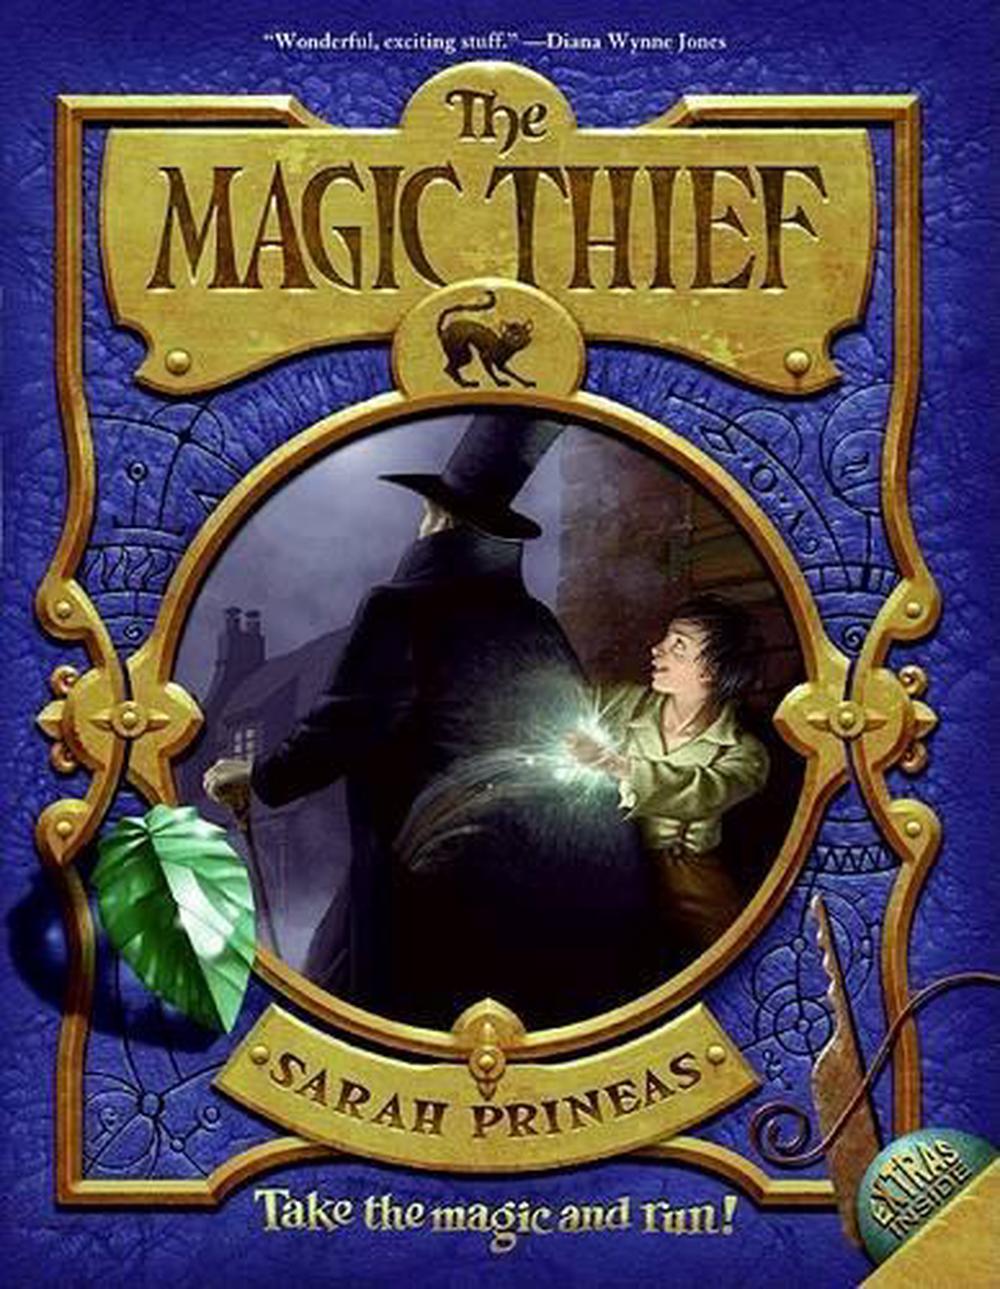 the magic thief found